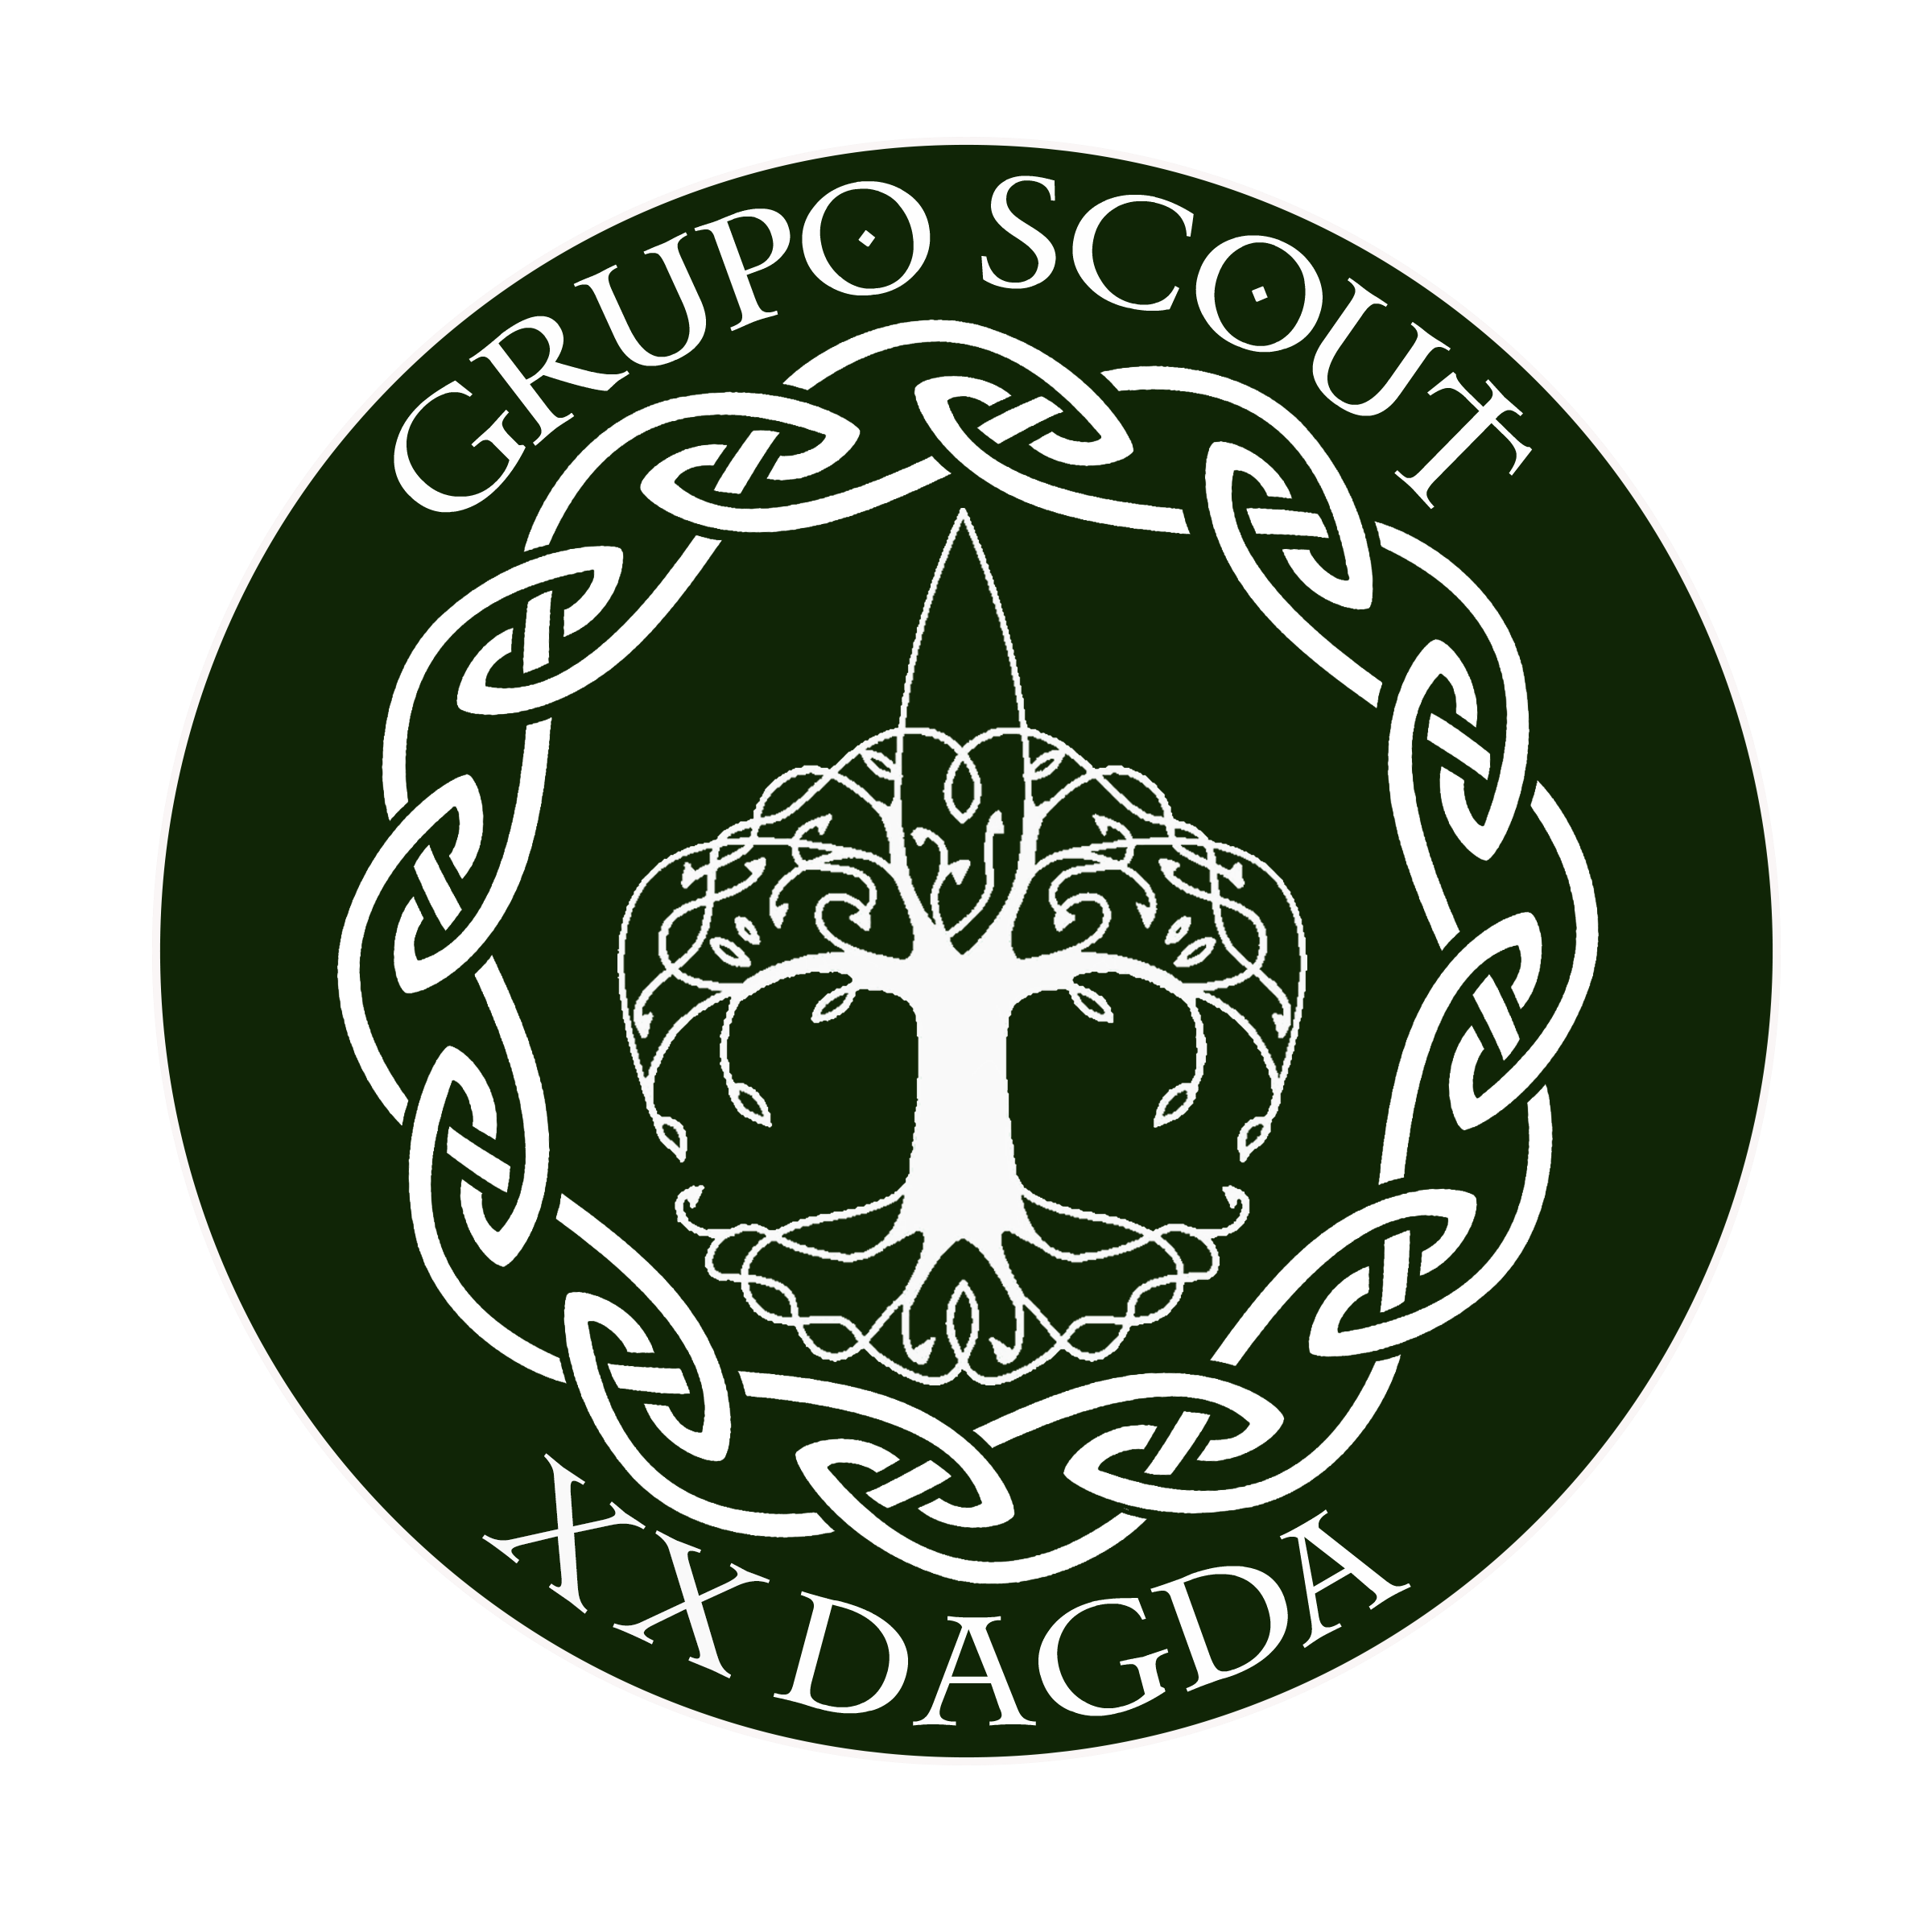 Grupo scout 20 dagda